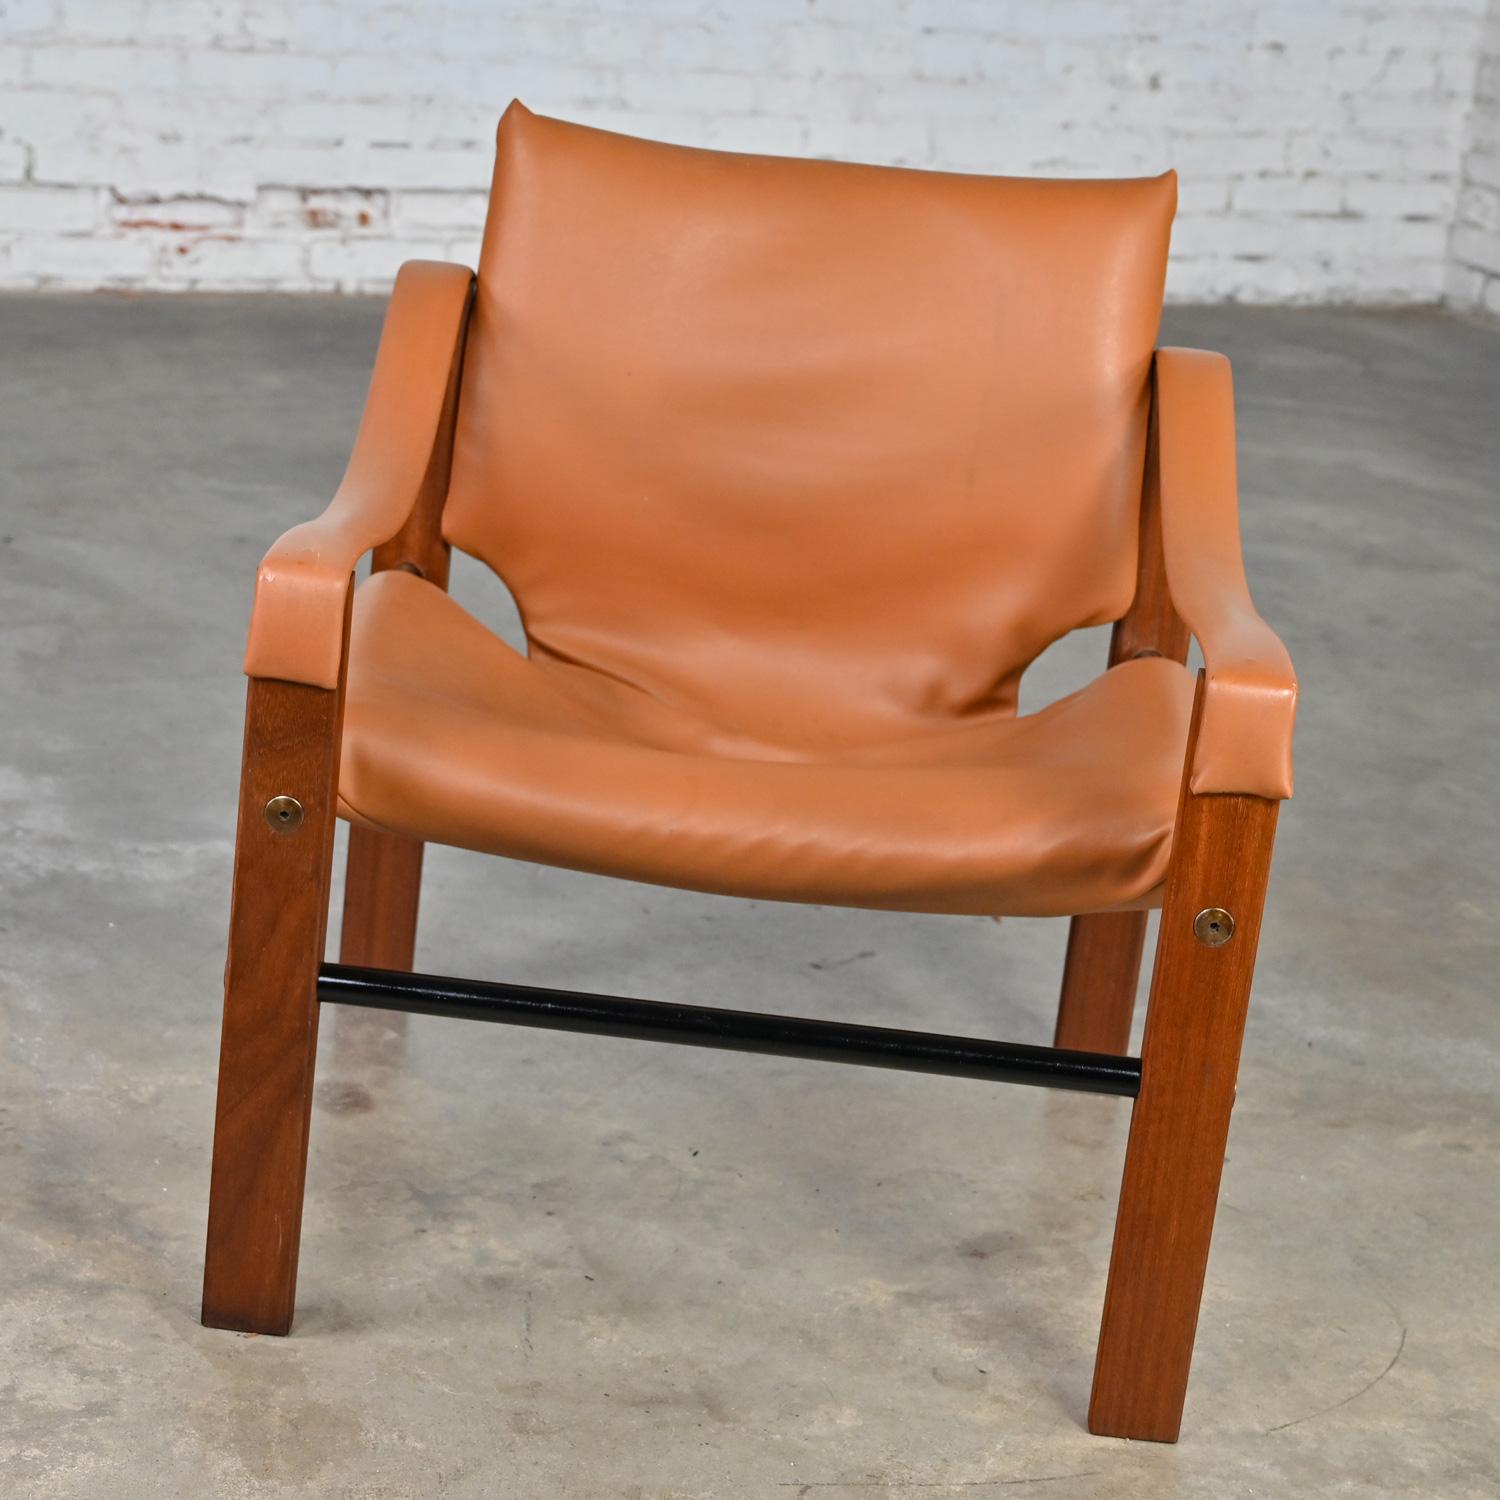 Fantastique chaise vintage Chelsea Safari Chair conçue par Maurice Burke pour Arkana Furniture, portant son faux cuir ou vinyle cognac d'origine avec un cadre en teck, des patins tubulaires en métal noir, et des détails de vis en acier.  Très bon